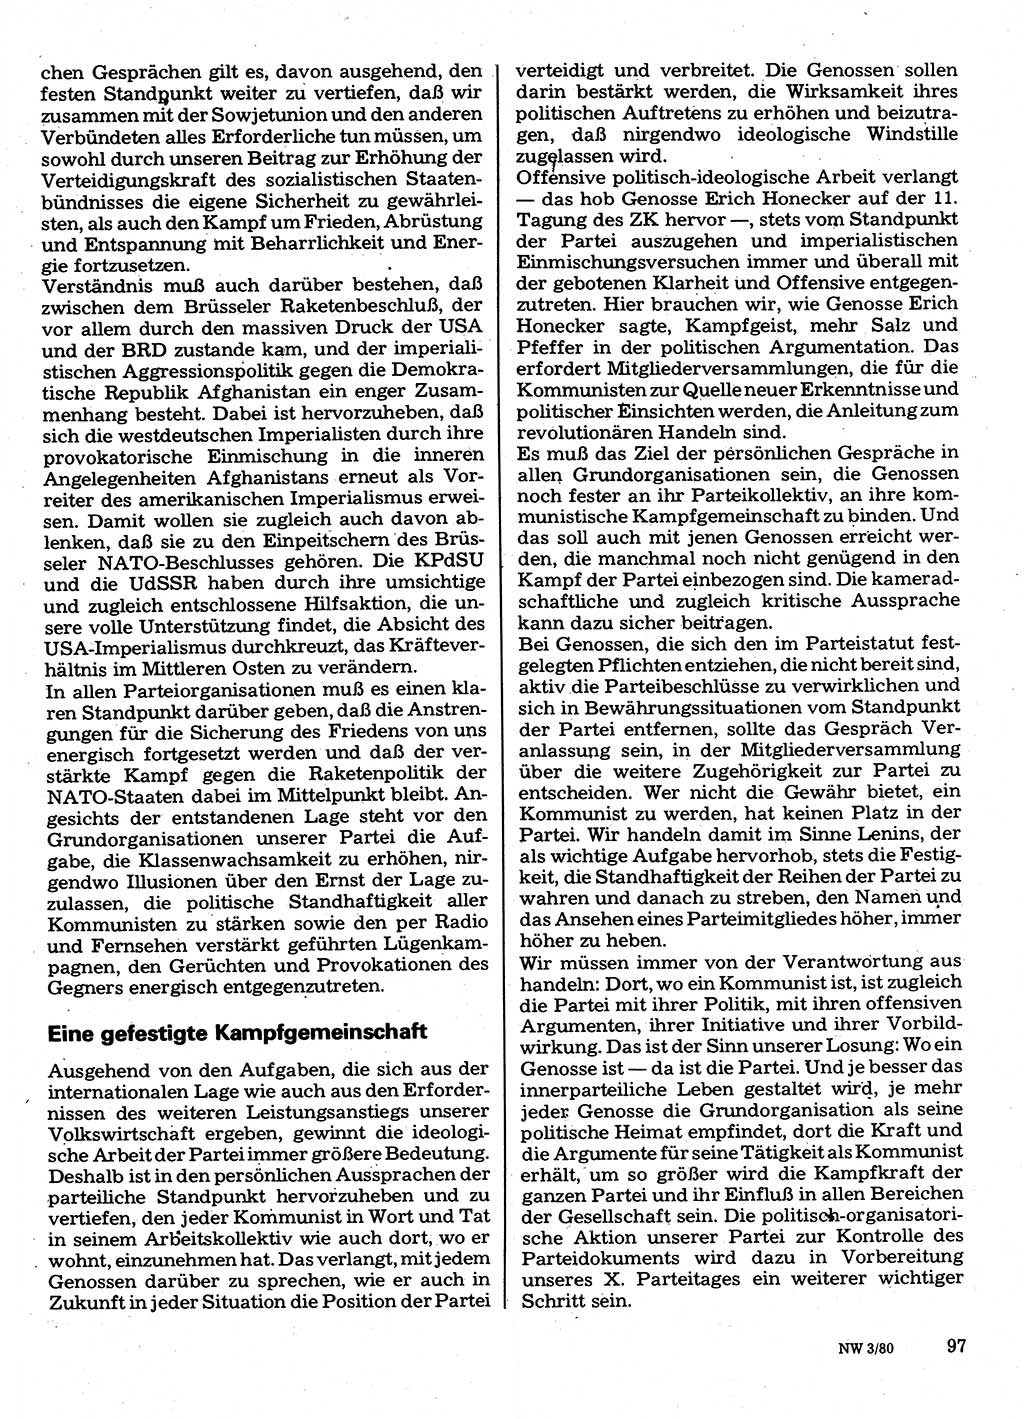 Neuer Weg (NW), Organ des Zentralkomitees (ZK) der SED (Sozialistische Einheitspartei Deutschlands) für Fragen des Parteilebens, 35. Jahrgang [Deutsche Demokratische Republik (DDR)] 1980, Seite 97 (NW ZK SED DDR 1980, S. 97)